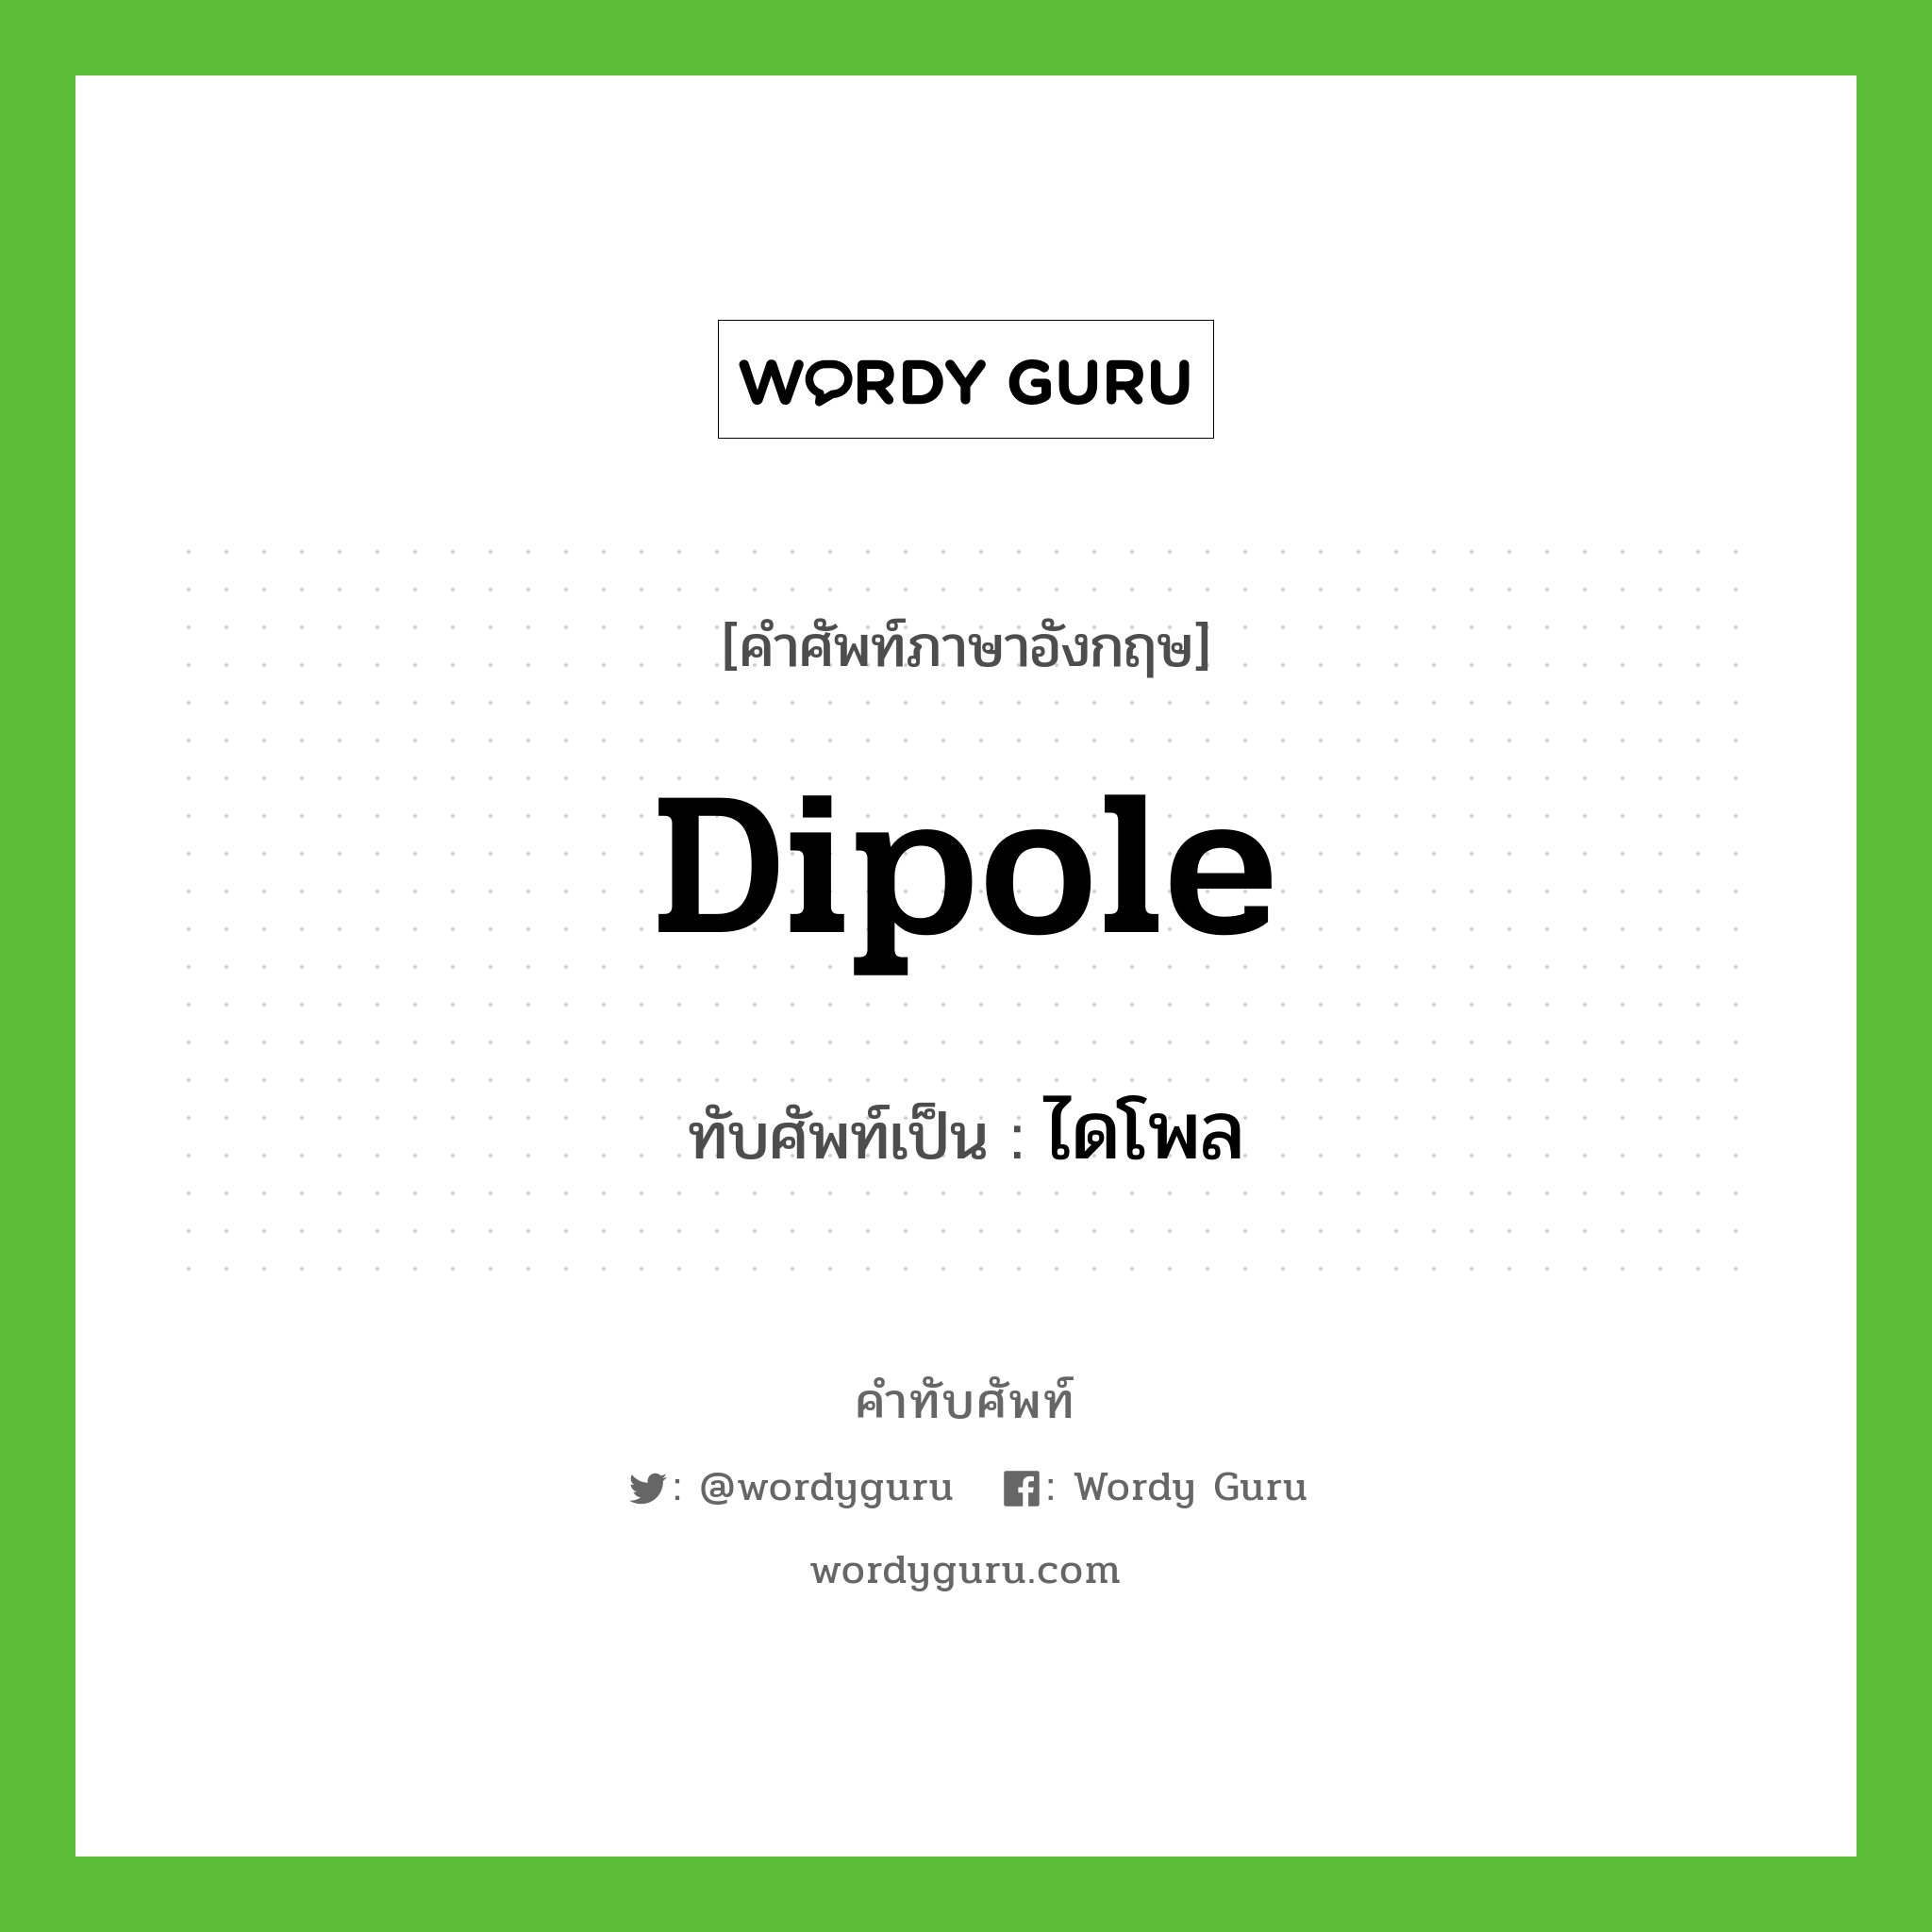 dipole เขียนเป็นคำไทยว่าอะไร?, คำศัพท์ภาษาอังกฤษ dipole ทับศัพท์เป็น ไดโพล